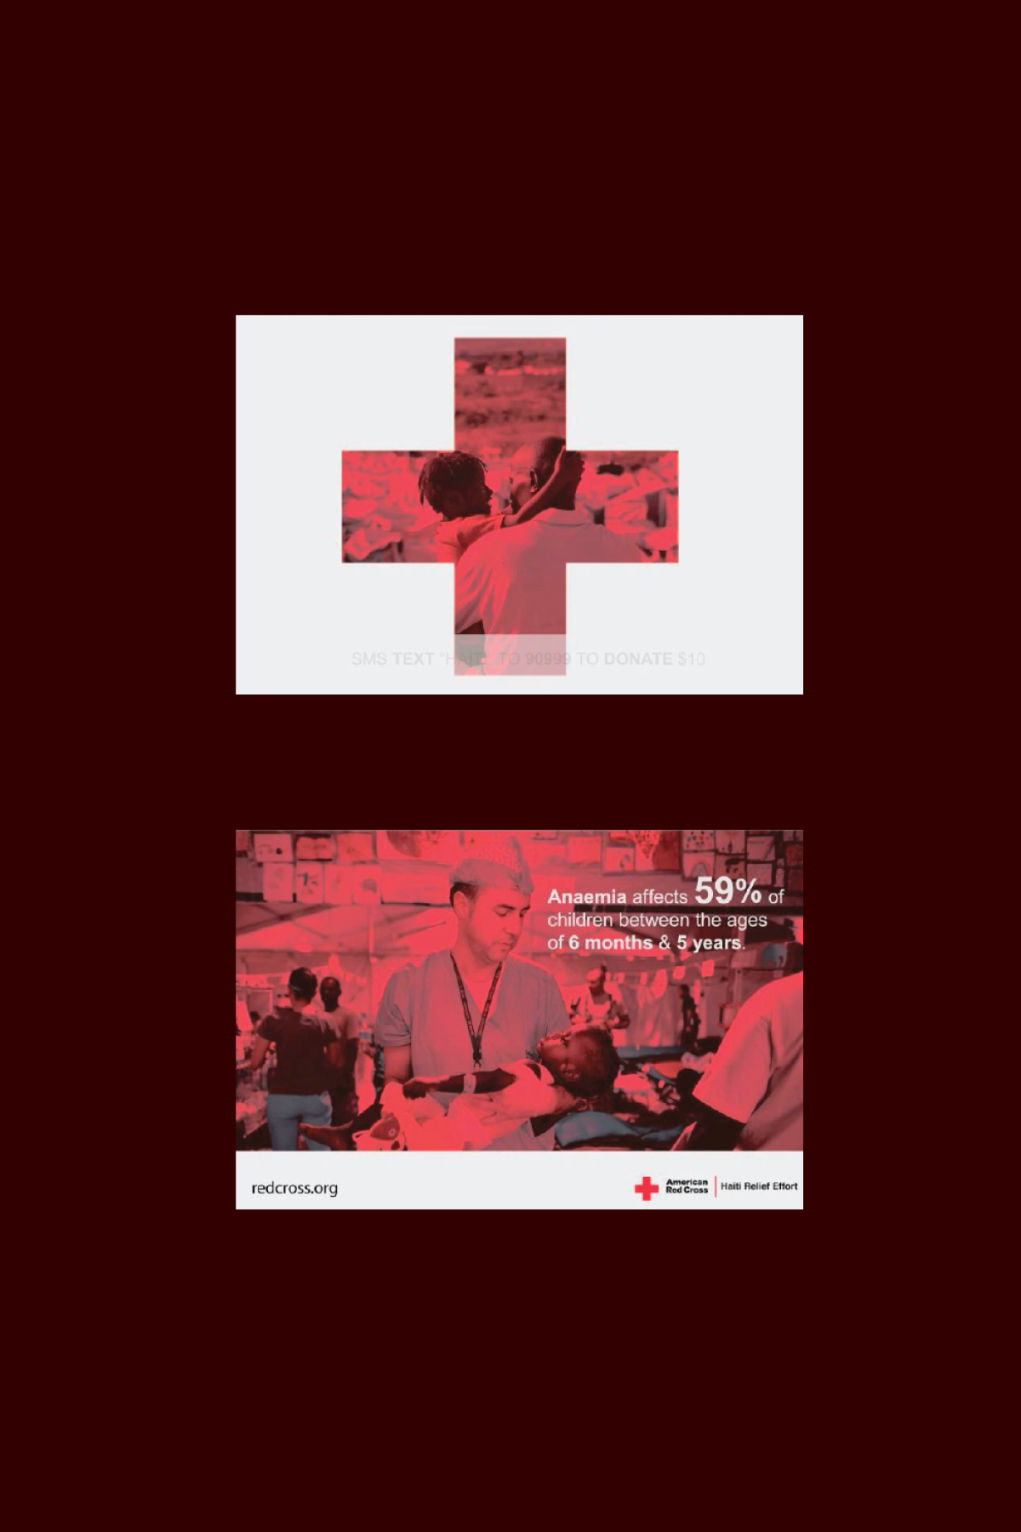 Red Cross - Haiti - Video